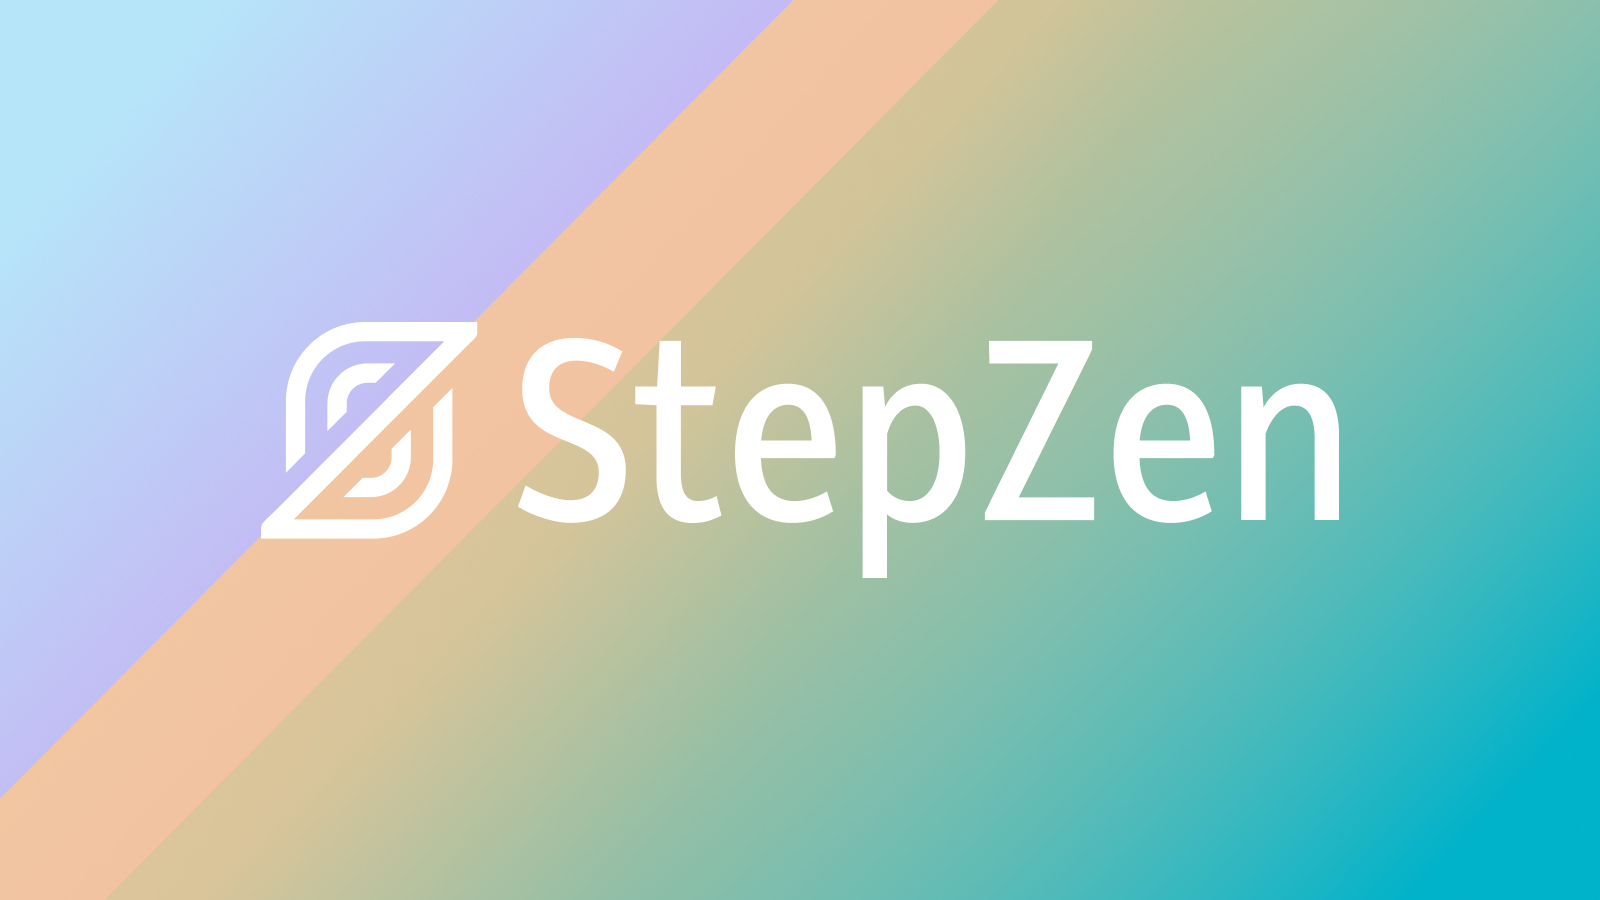 StepZen: Run a GraphQL call, get stickers!